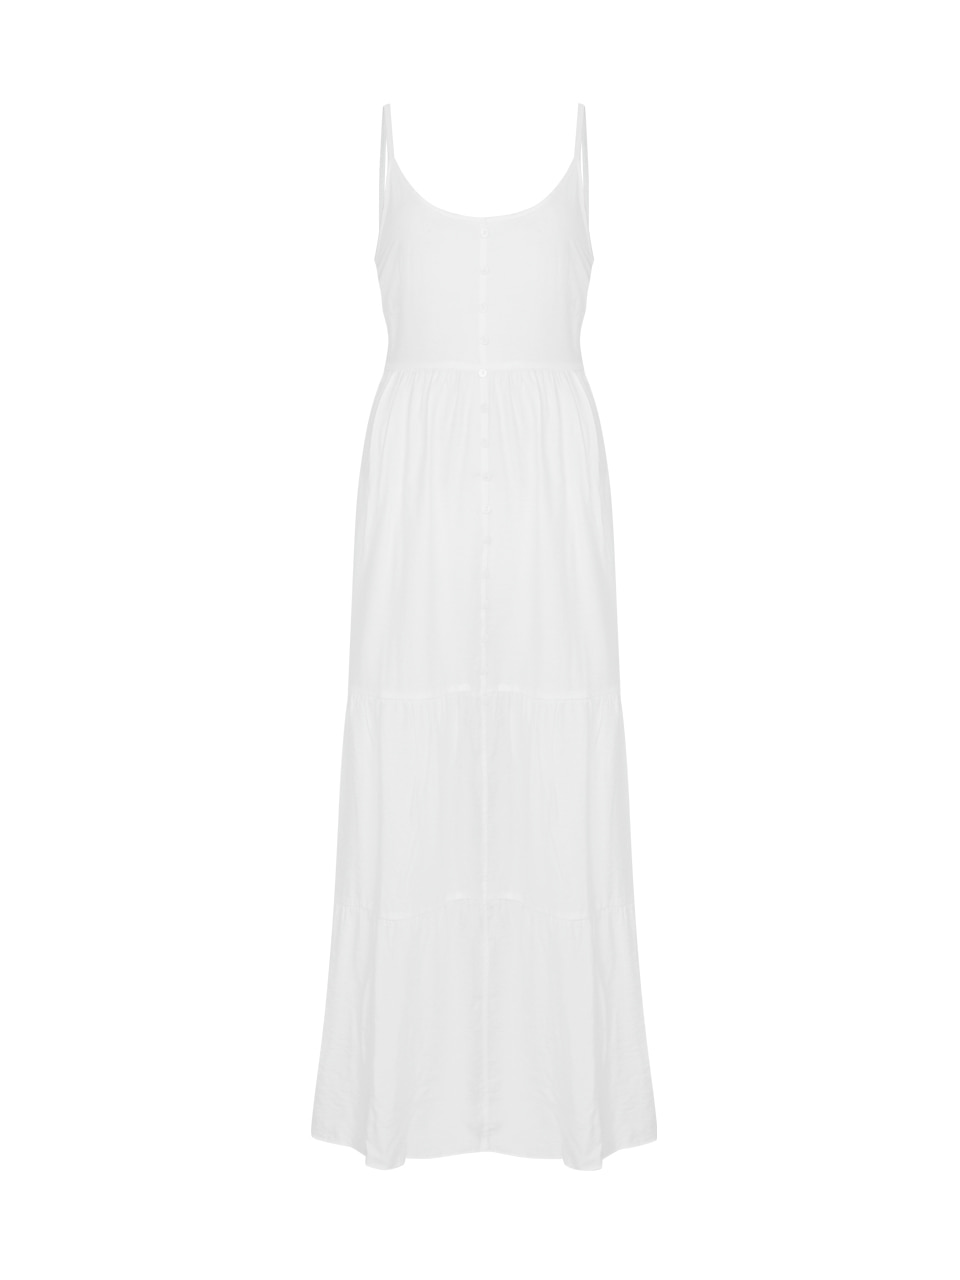 bloom sleeveless dress - white